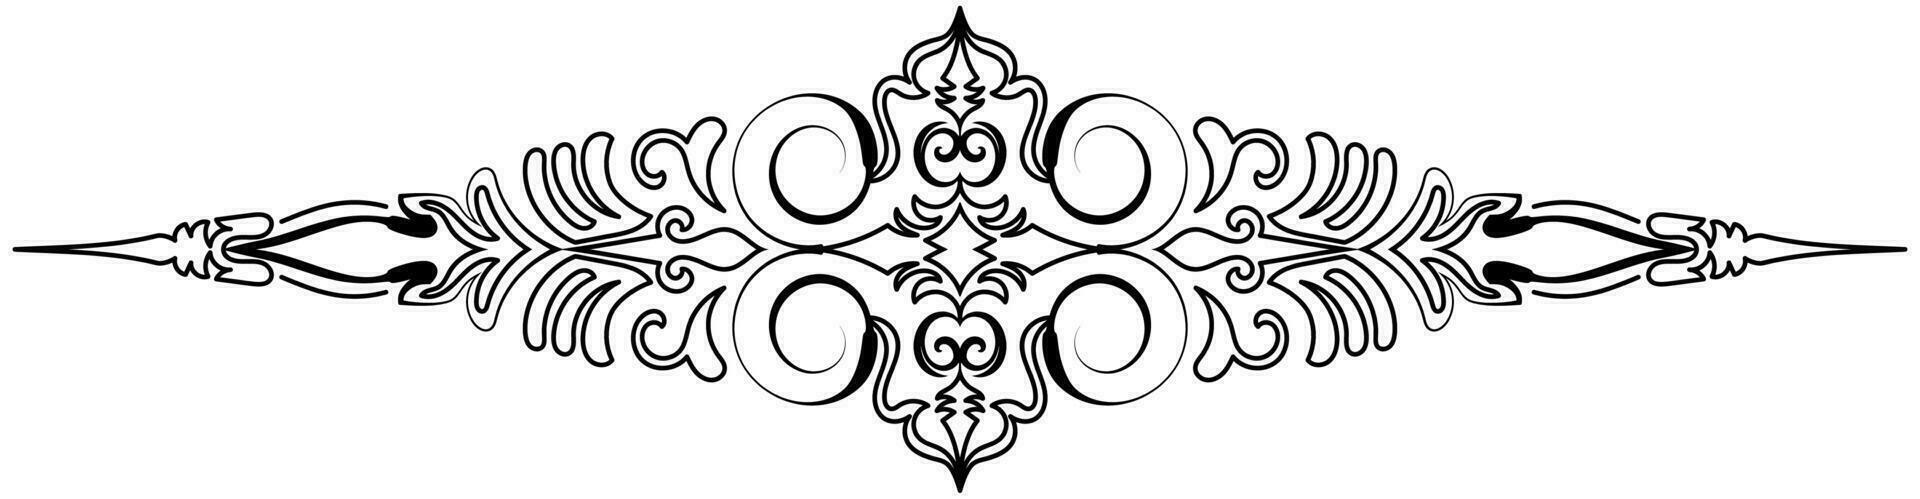 Blume Rand dekorativ Design Element Hochzeit Banner, Rahmen, Etiketten, schwarz Linien auf Weiß. vektor